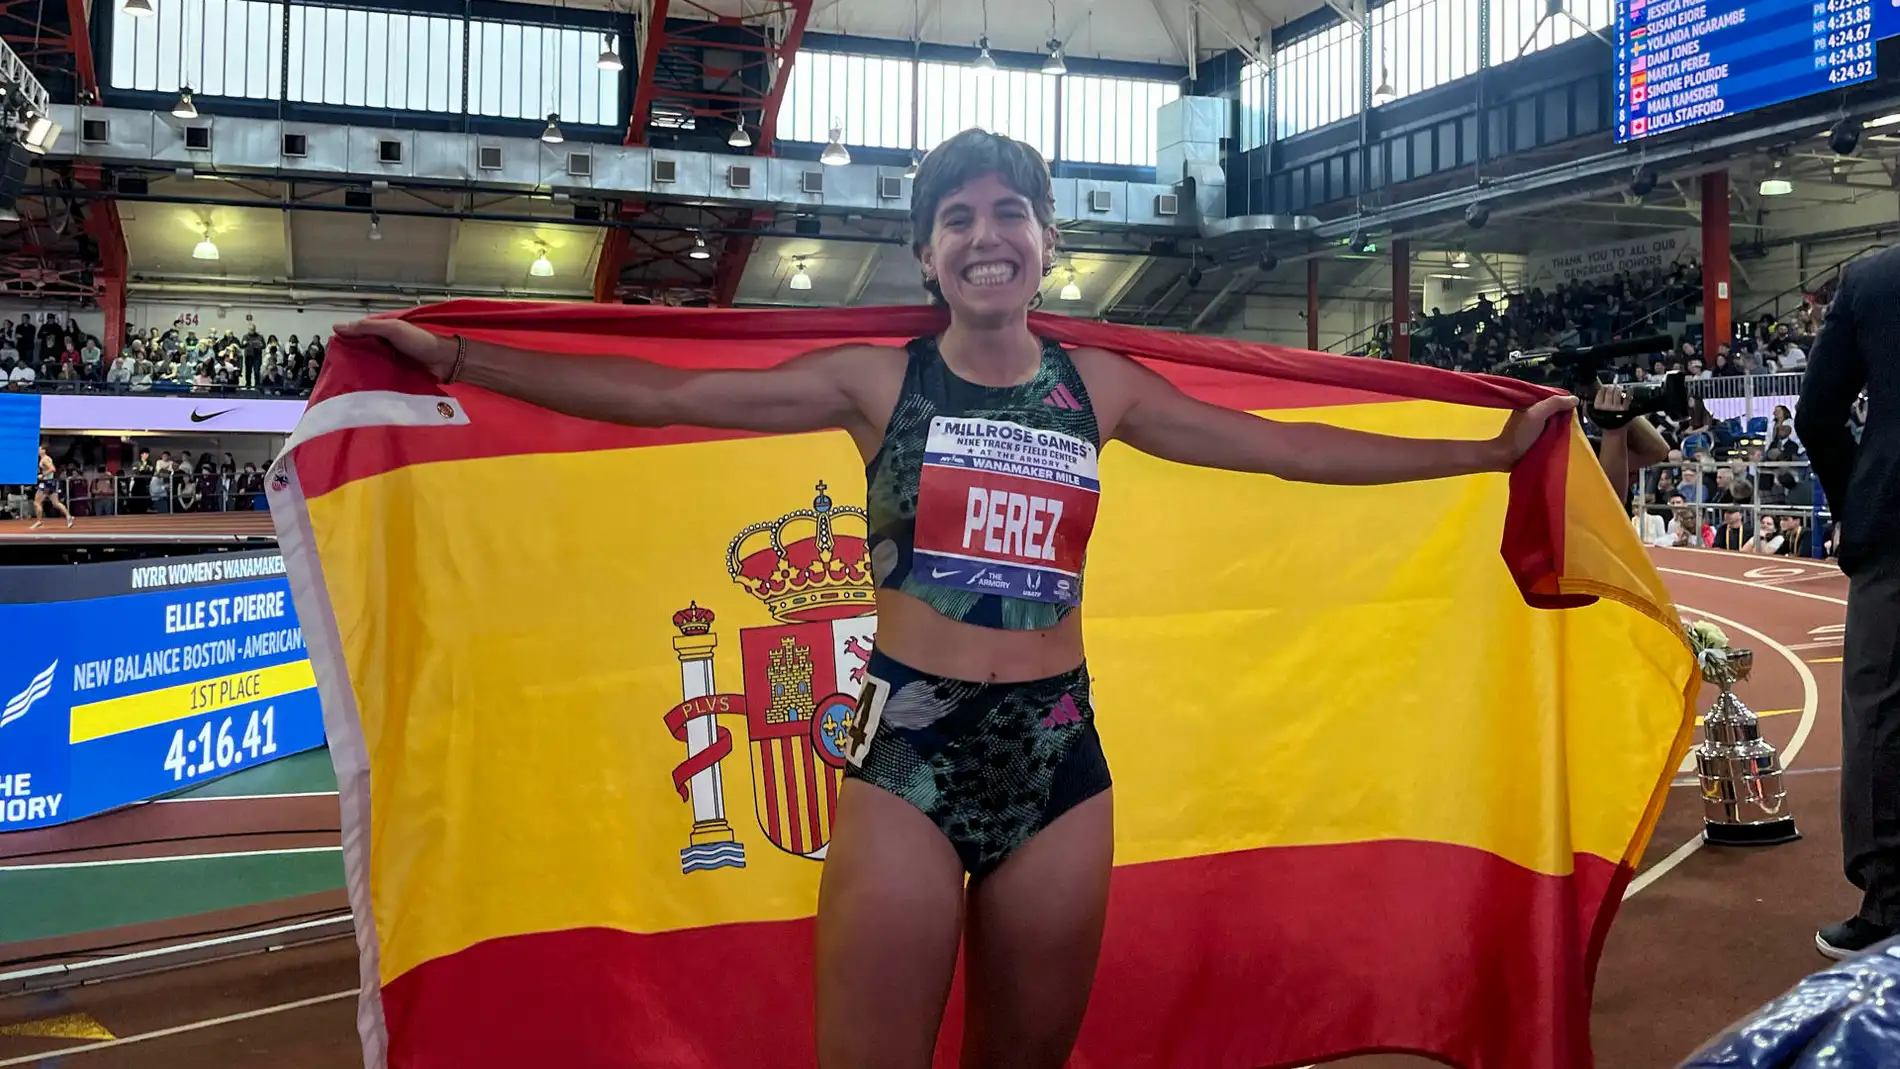 La soriana Marta Pérez batió este domingo el récord de España de la milla en pista corta con un tiempo de 4:23.88, en los Millrose Games de Nueva York